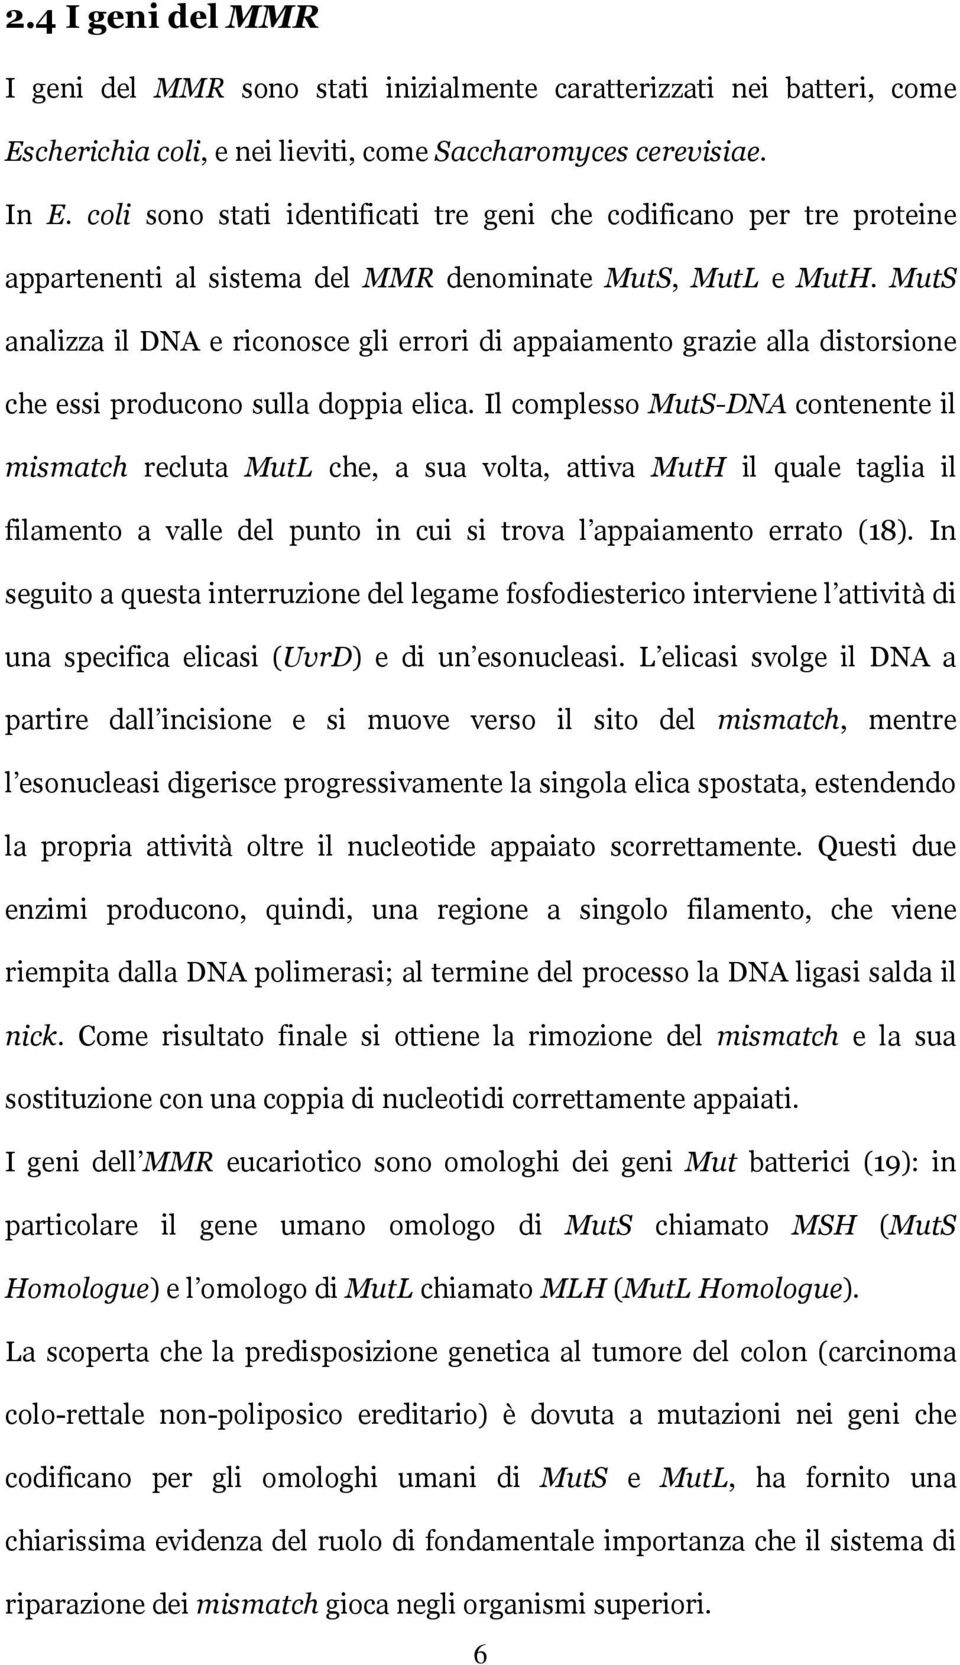 MutS analizza il DNA e riconosce gli errori di appaiamento grazie alla distorsione che essi producono sulla doppia elica.